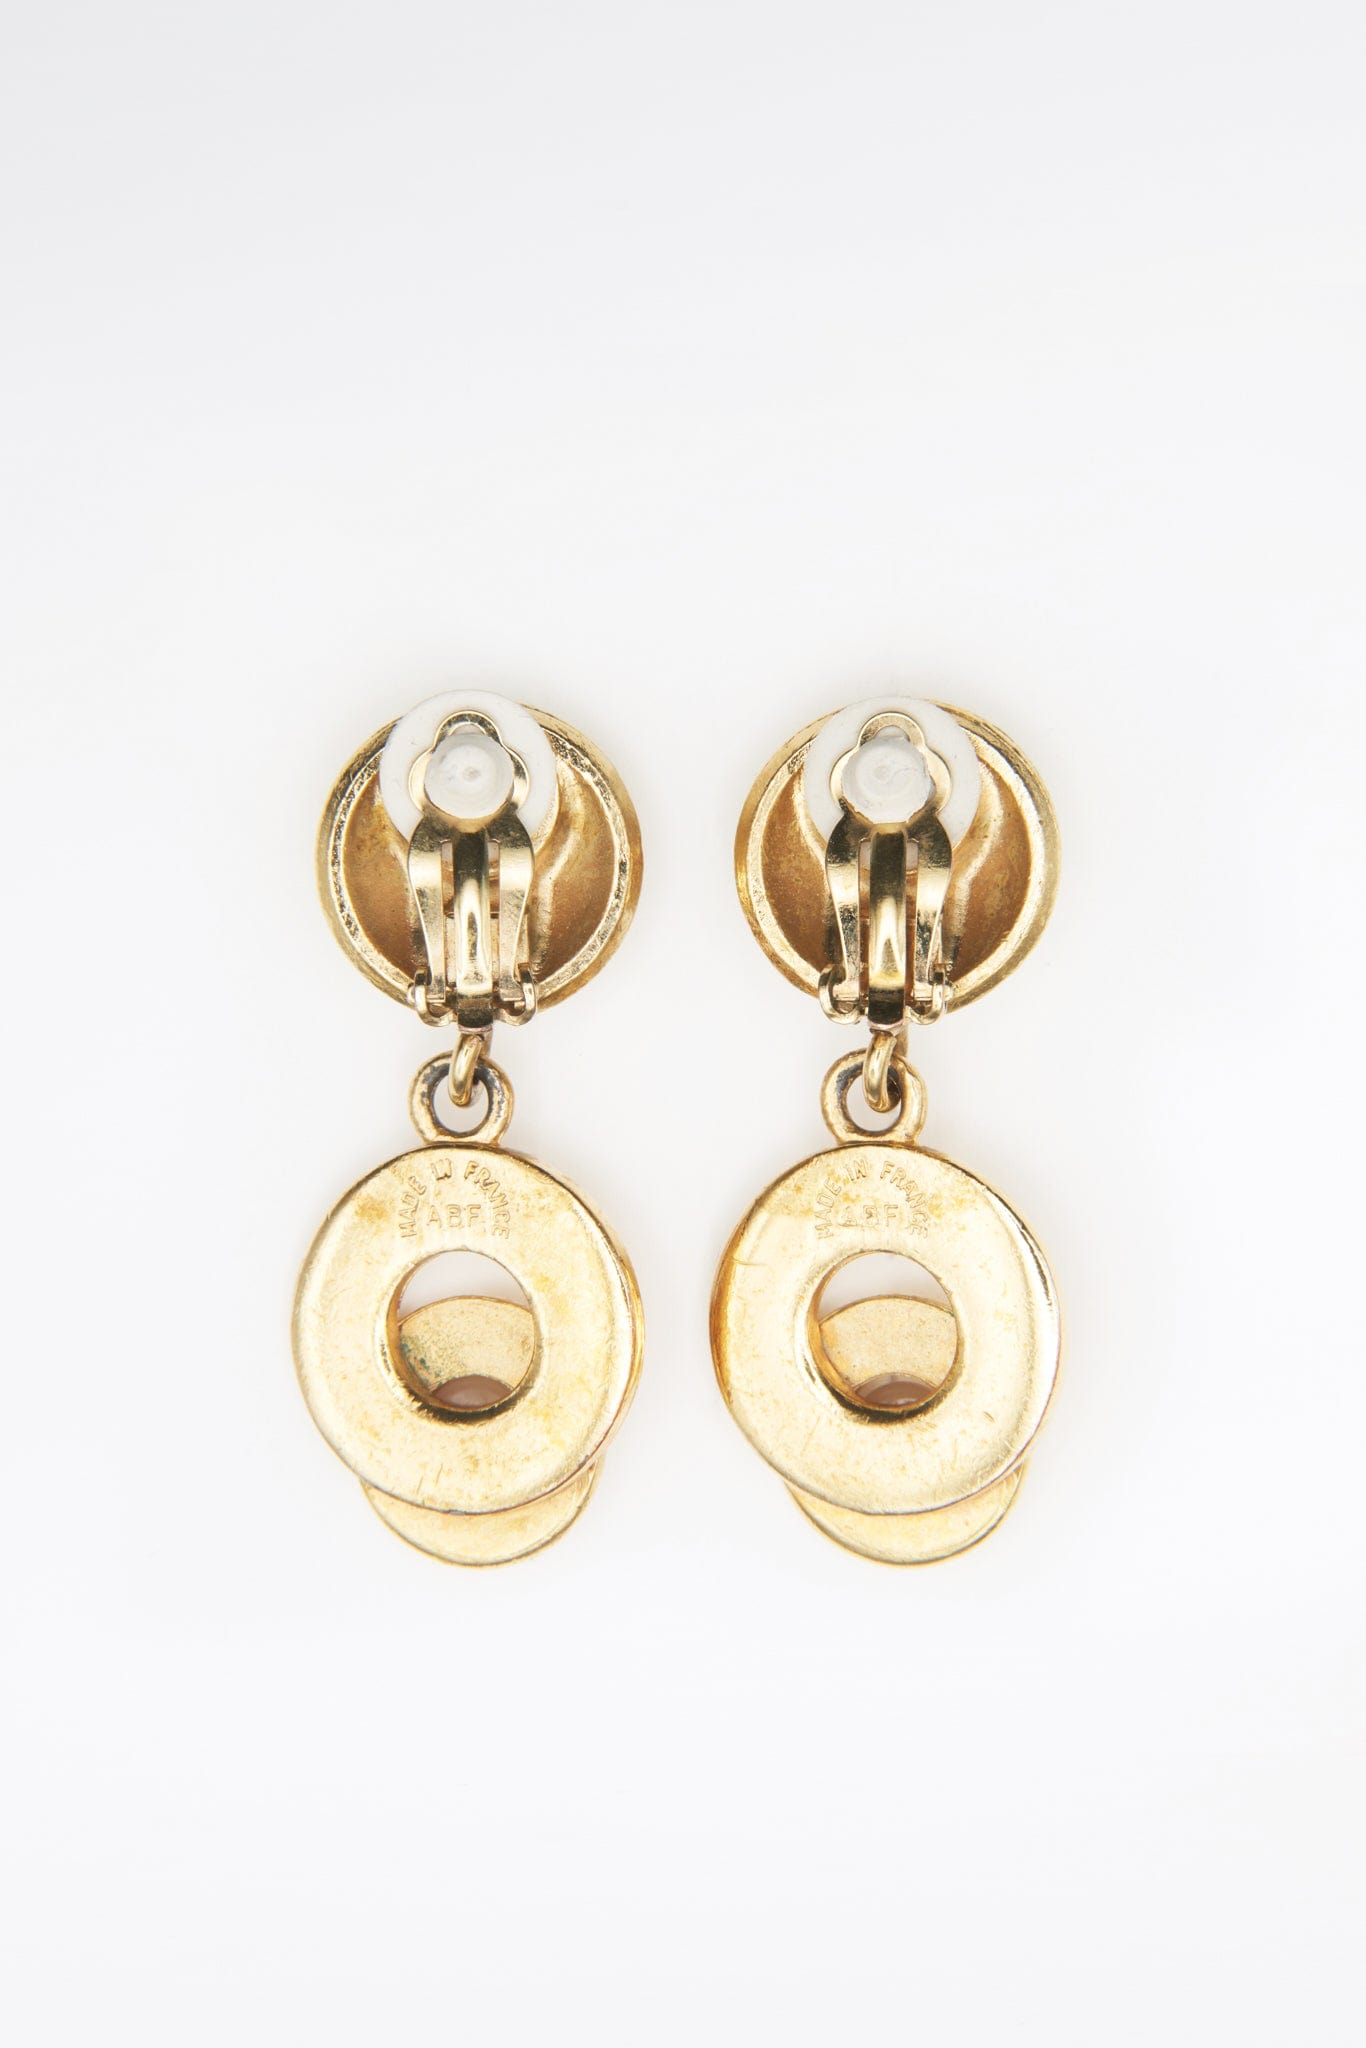 Vintage Gold Celine faux Pearl Earrings – The Hosta